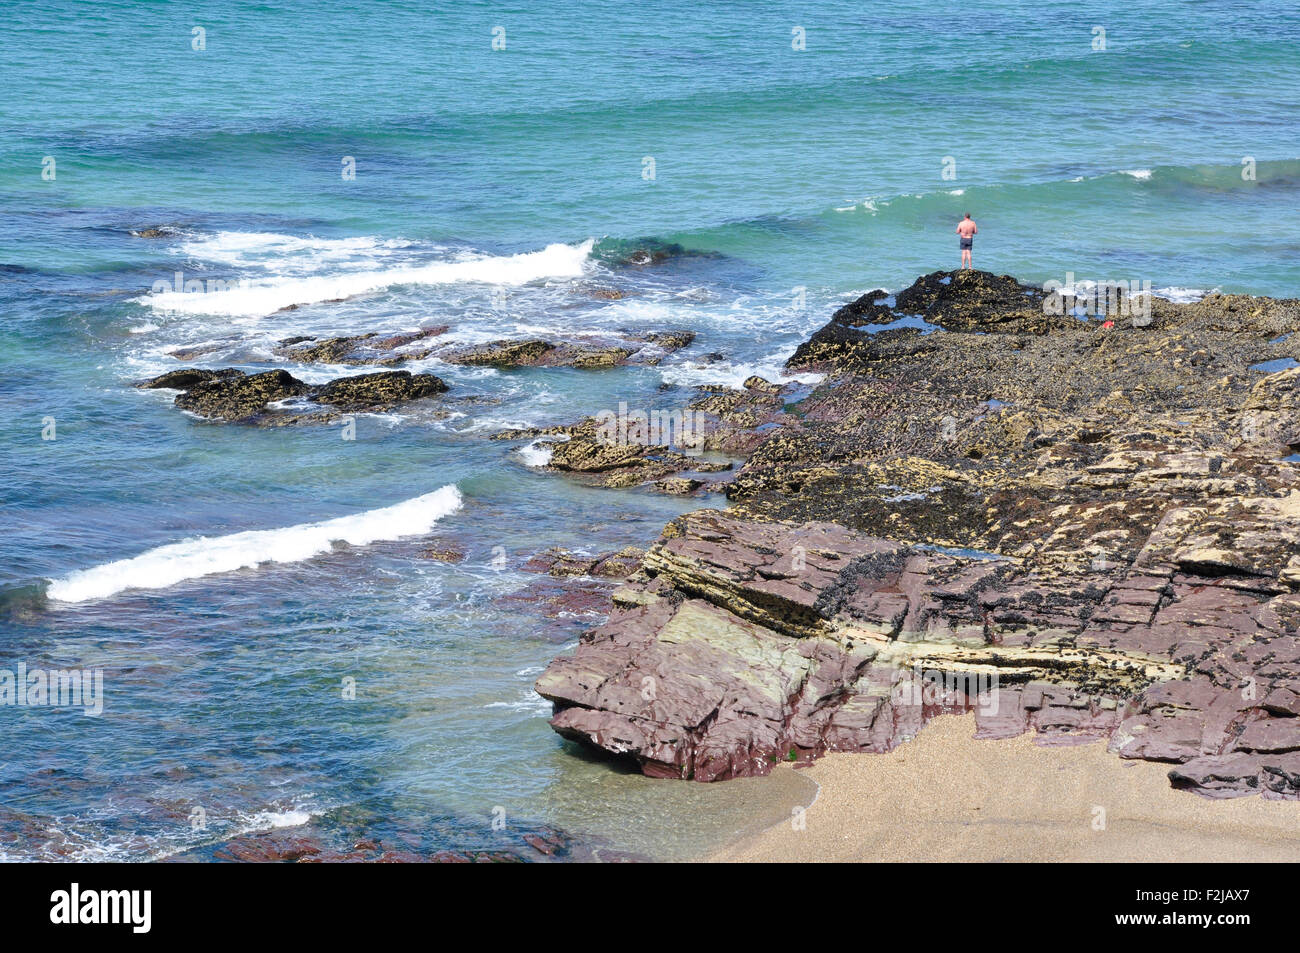 - Bañista solitaria diminuta figura en las rocas sobre el mar, Rompiendo las olas - mar azul - sol brillante Foto de stock